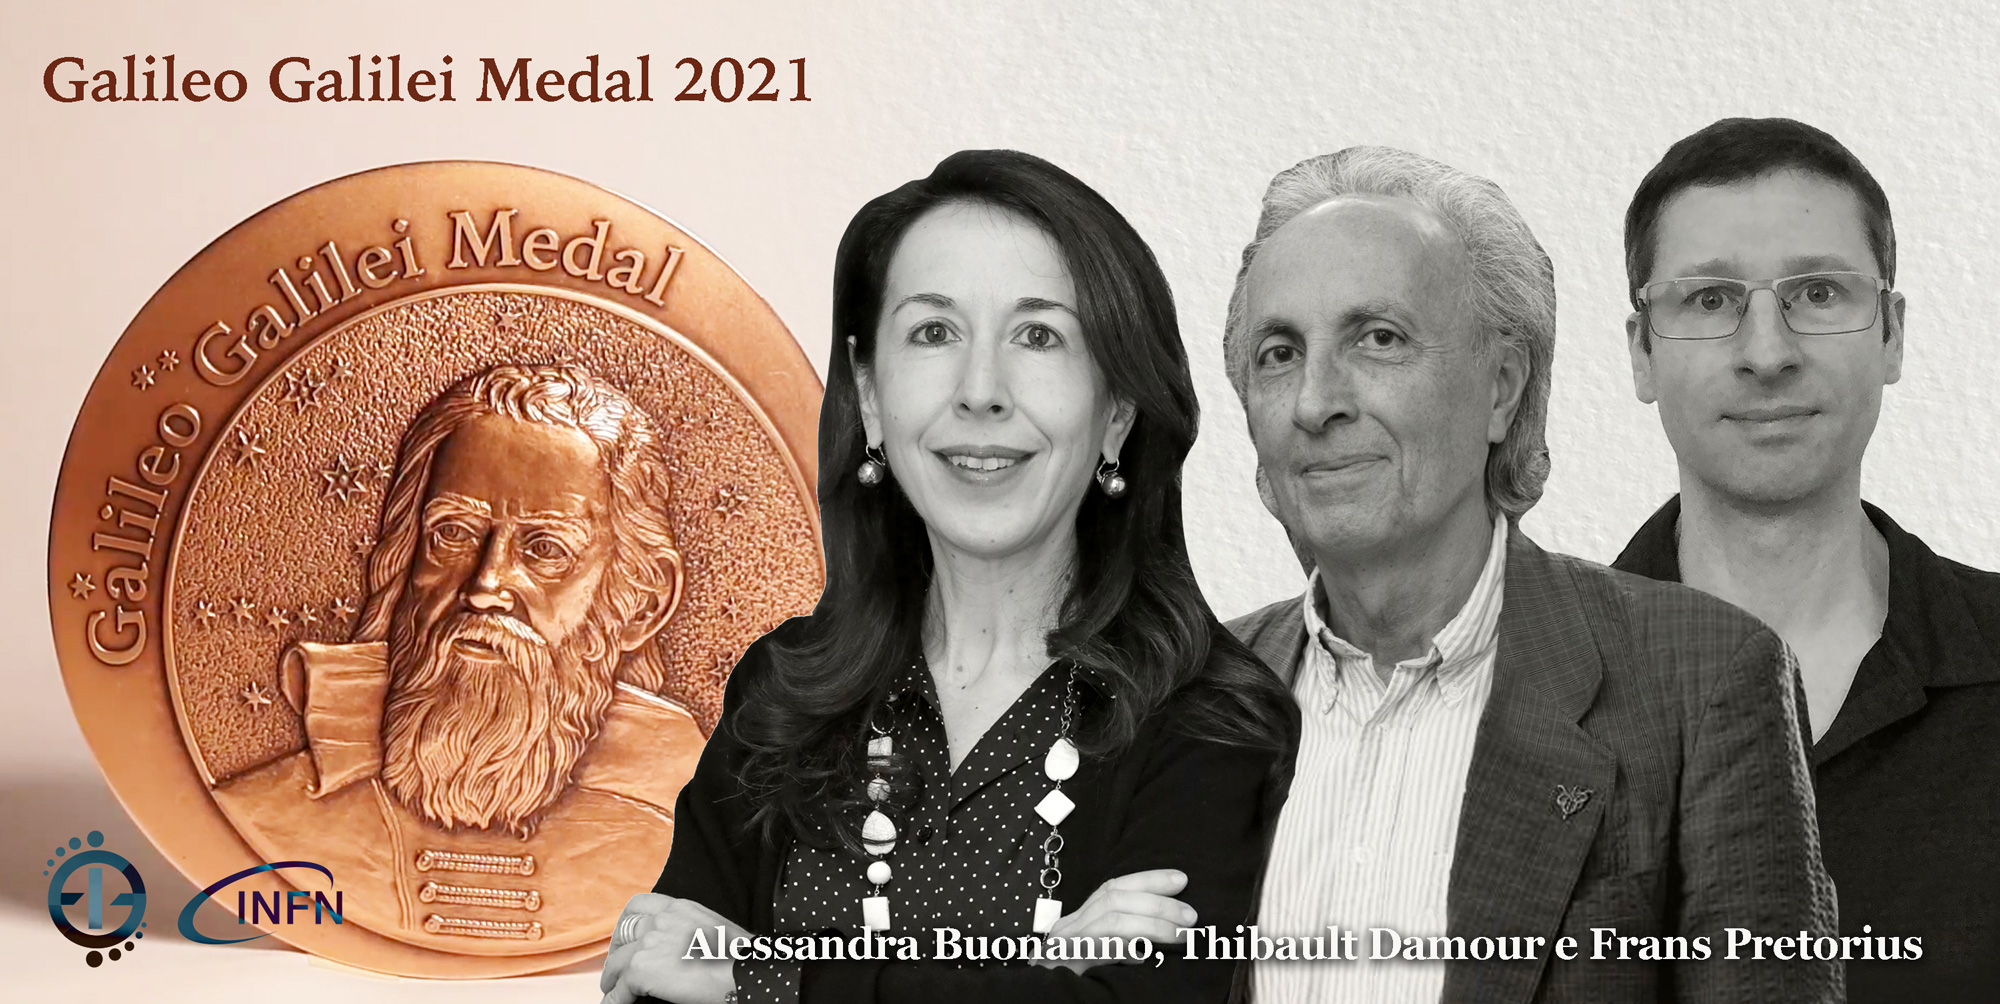 2021 Galileo Galilei medal